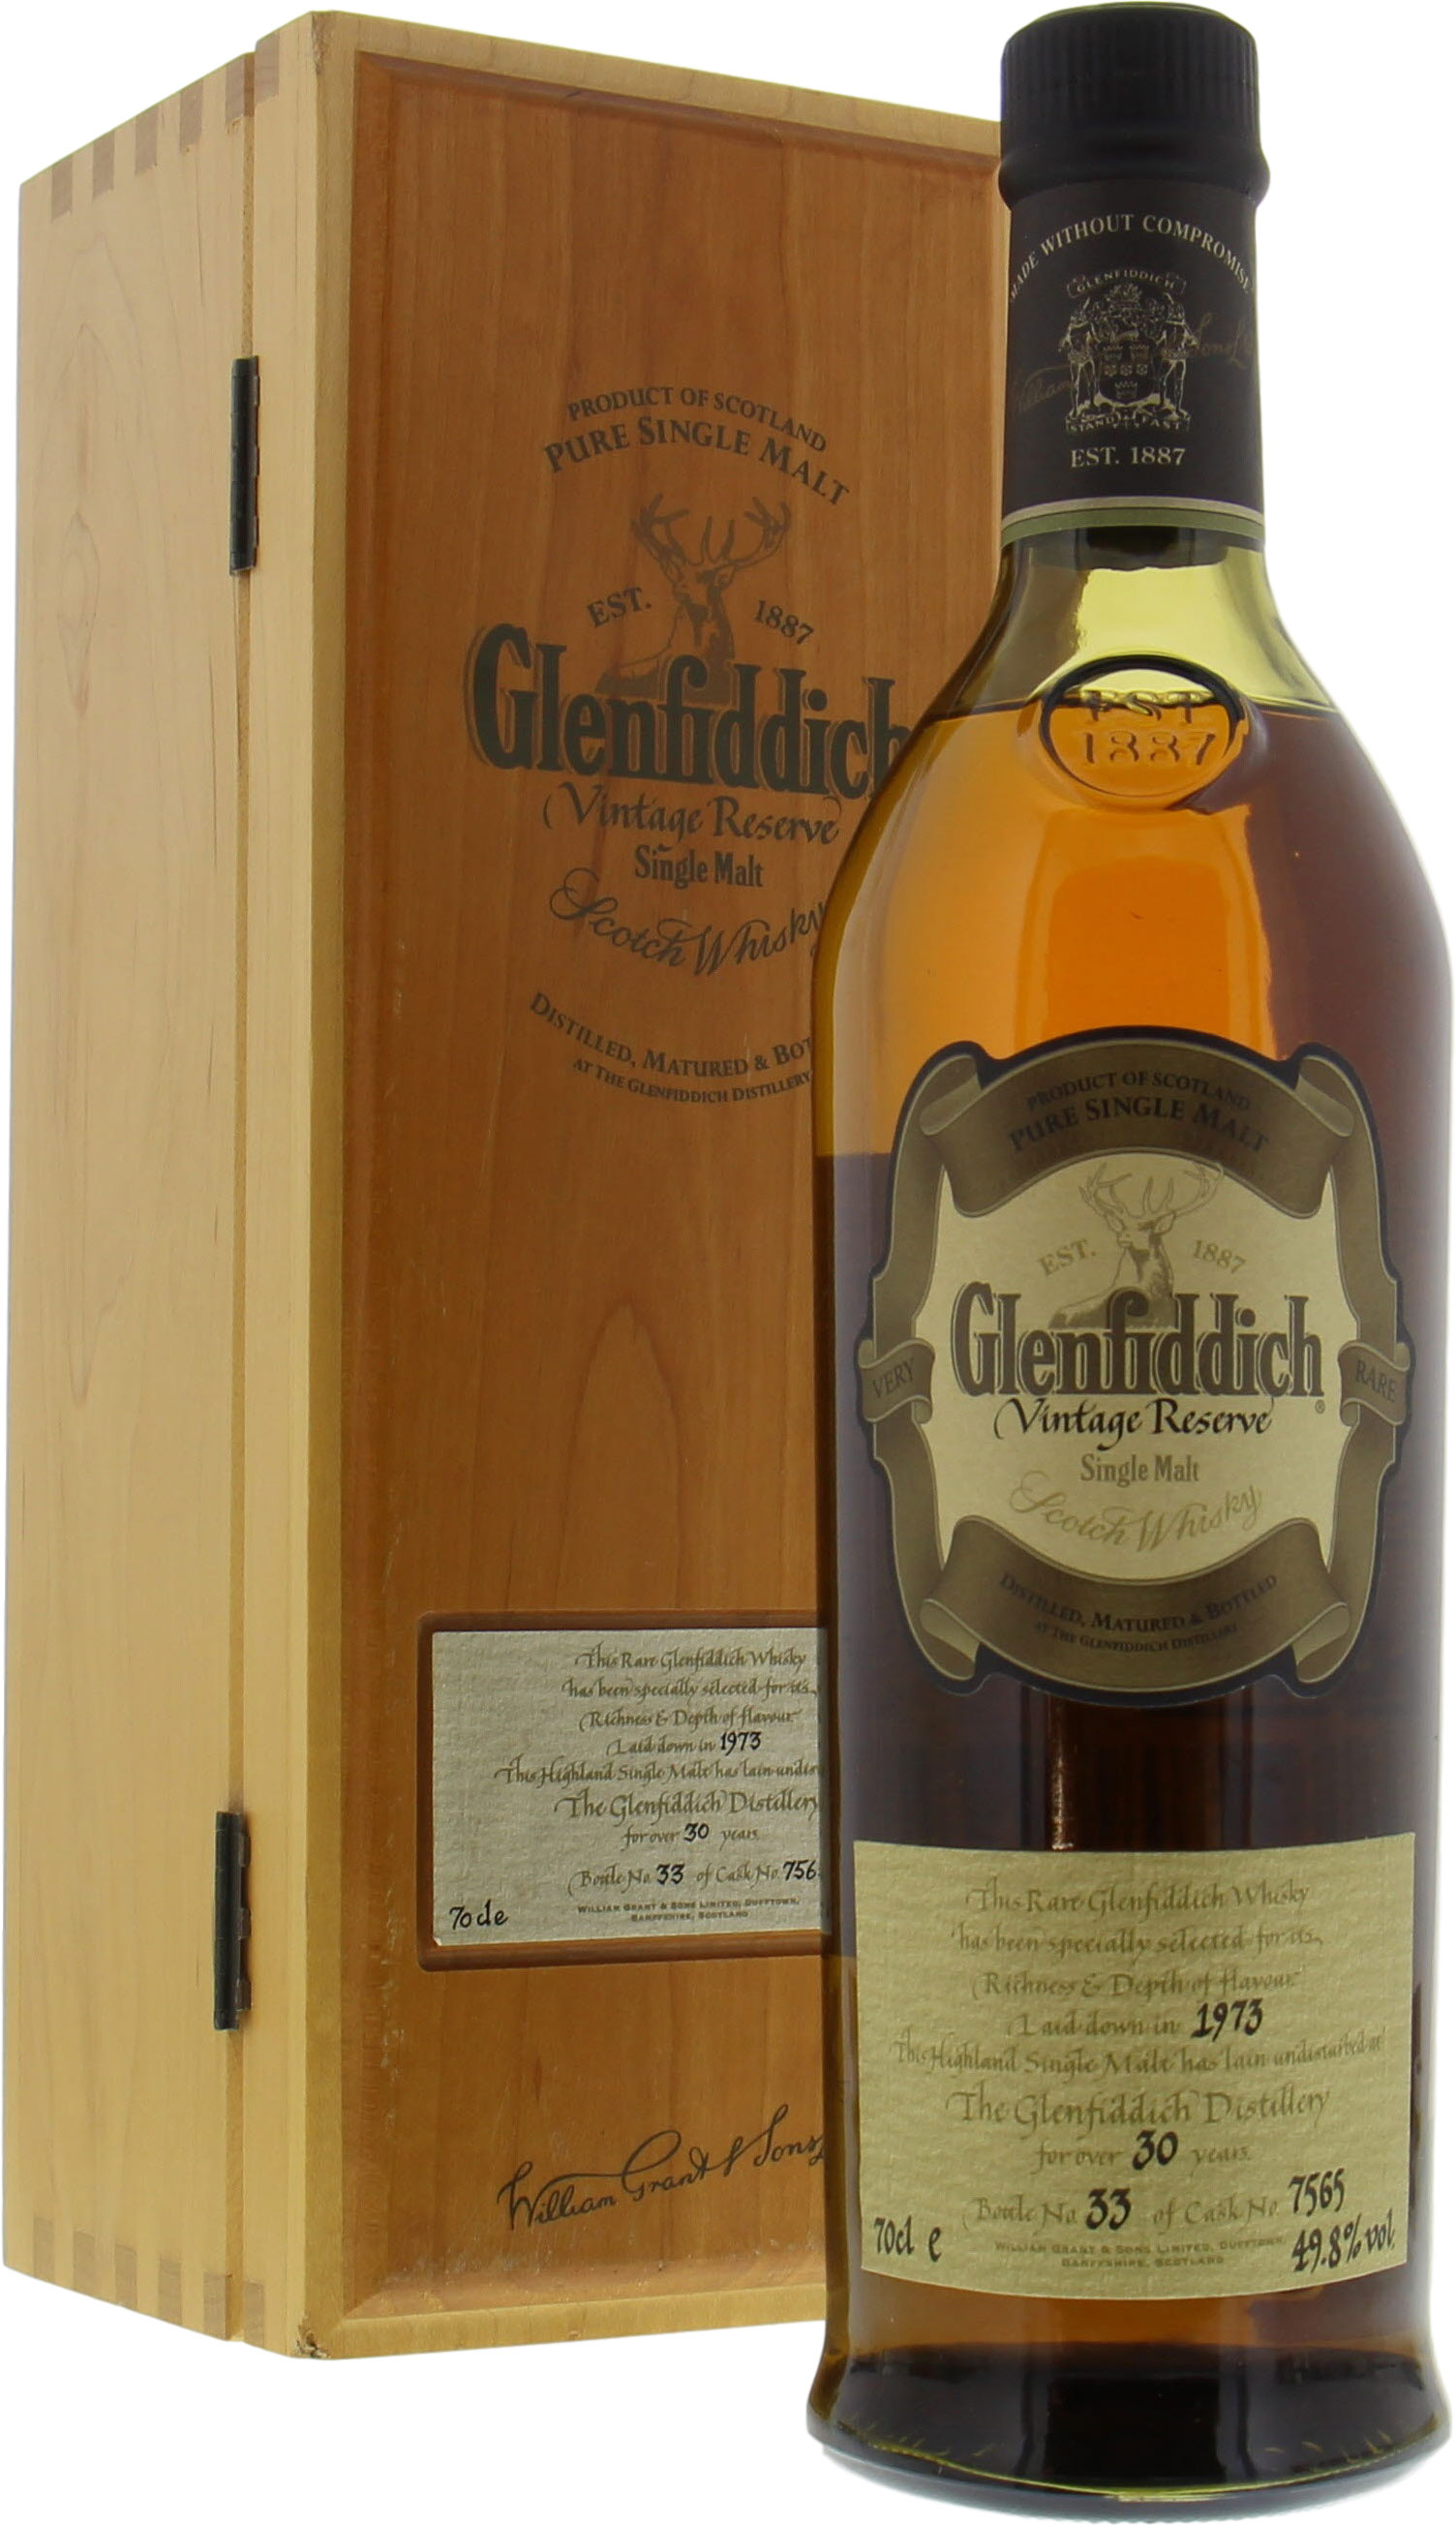 Glenfiddich - 30 Years Old Vintage Reserve Cask 7565 49.8% 1973